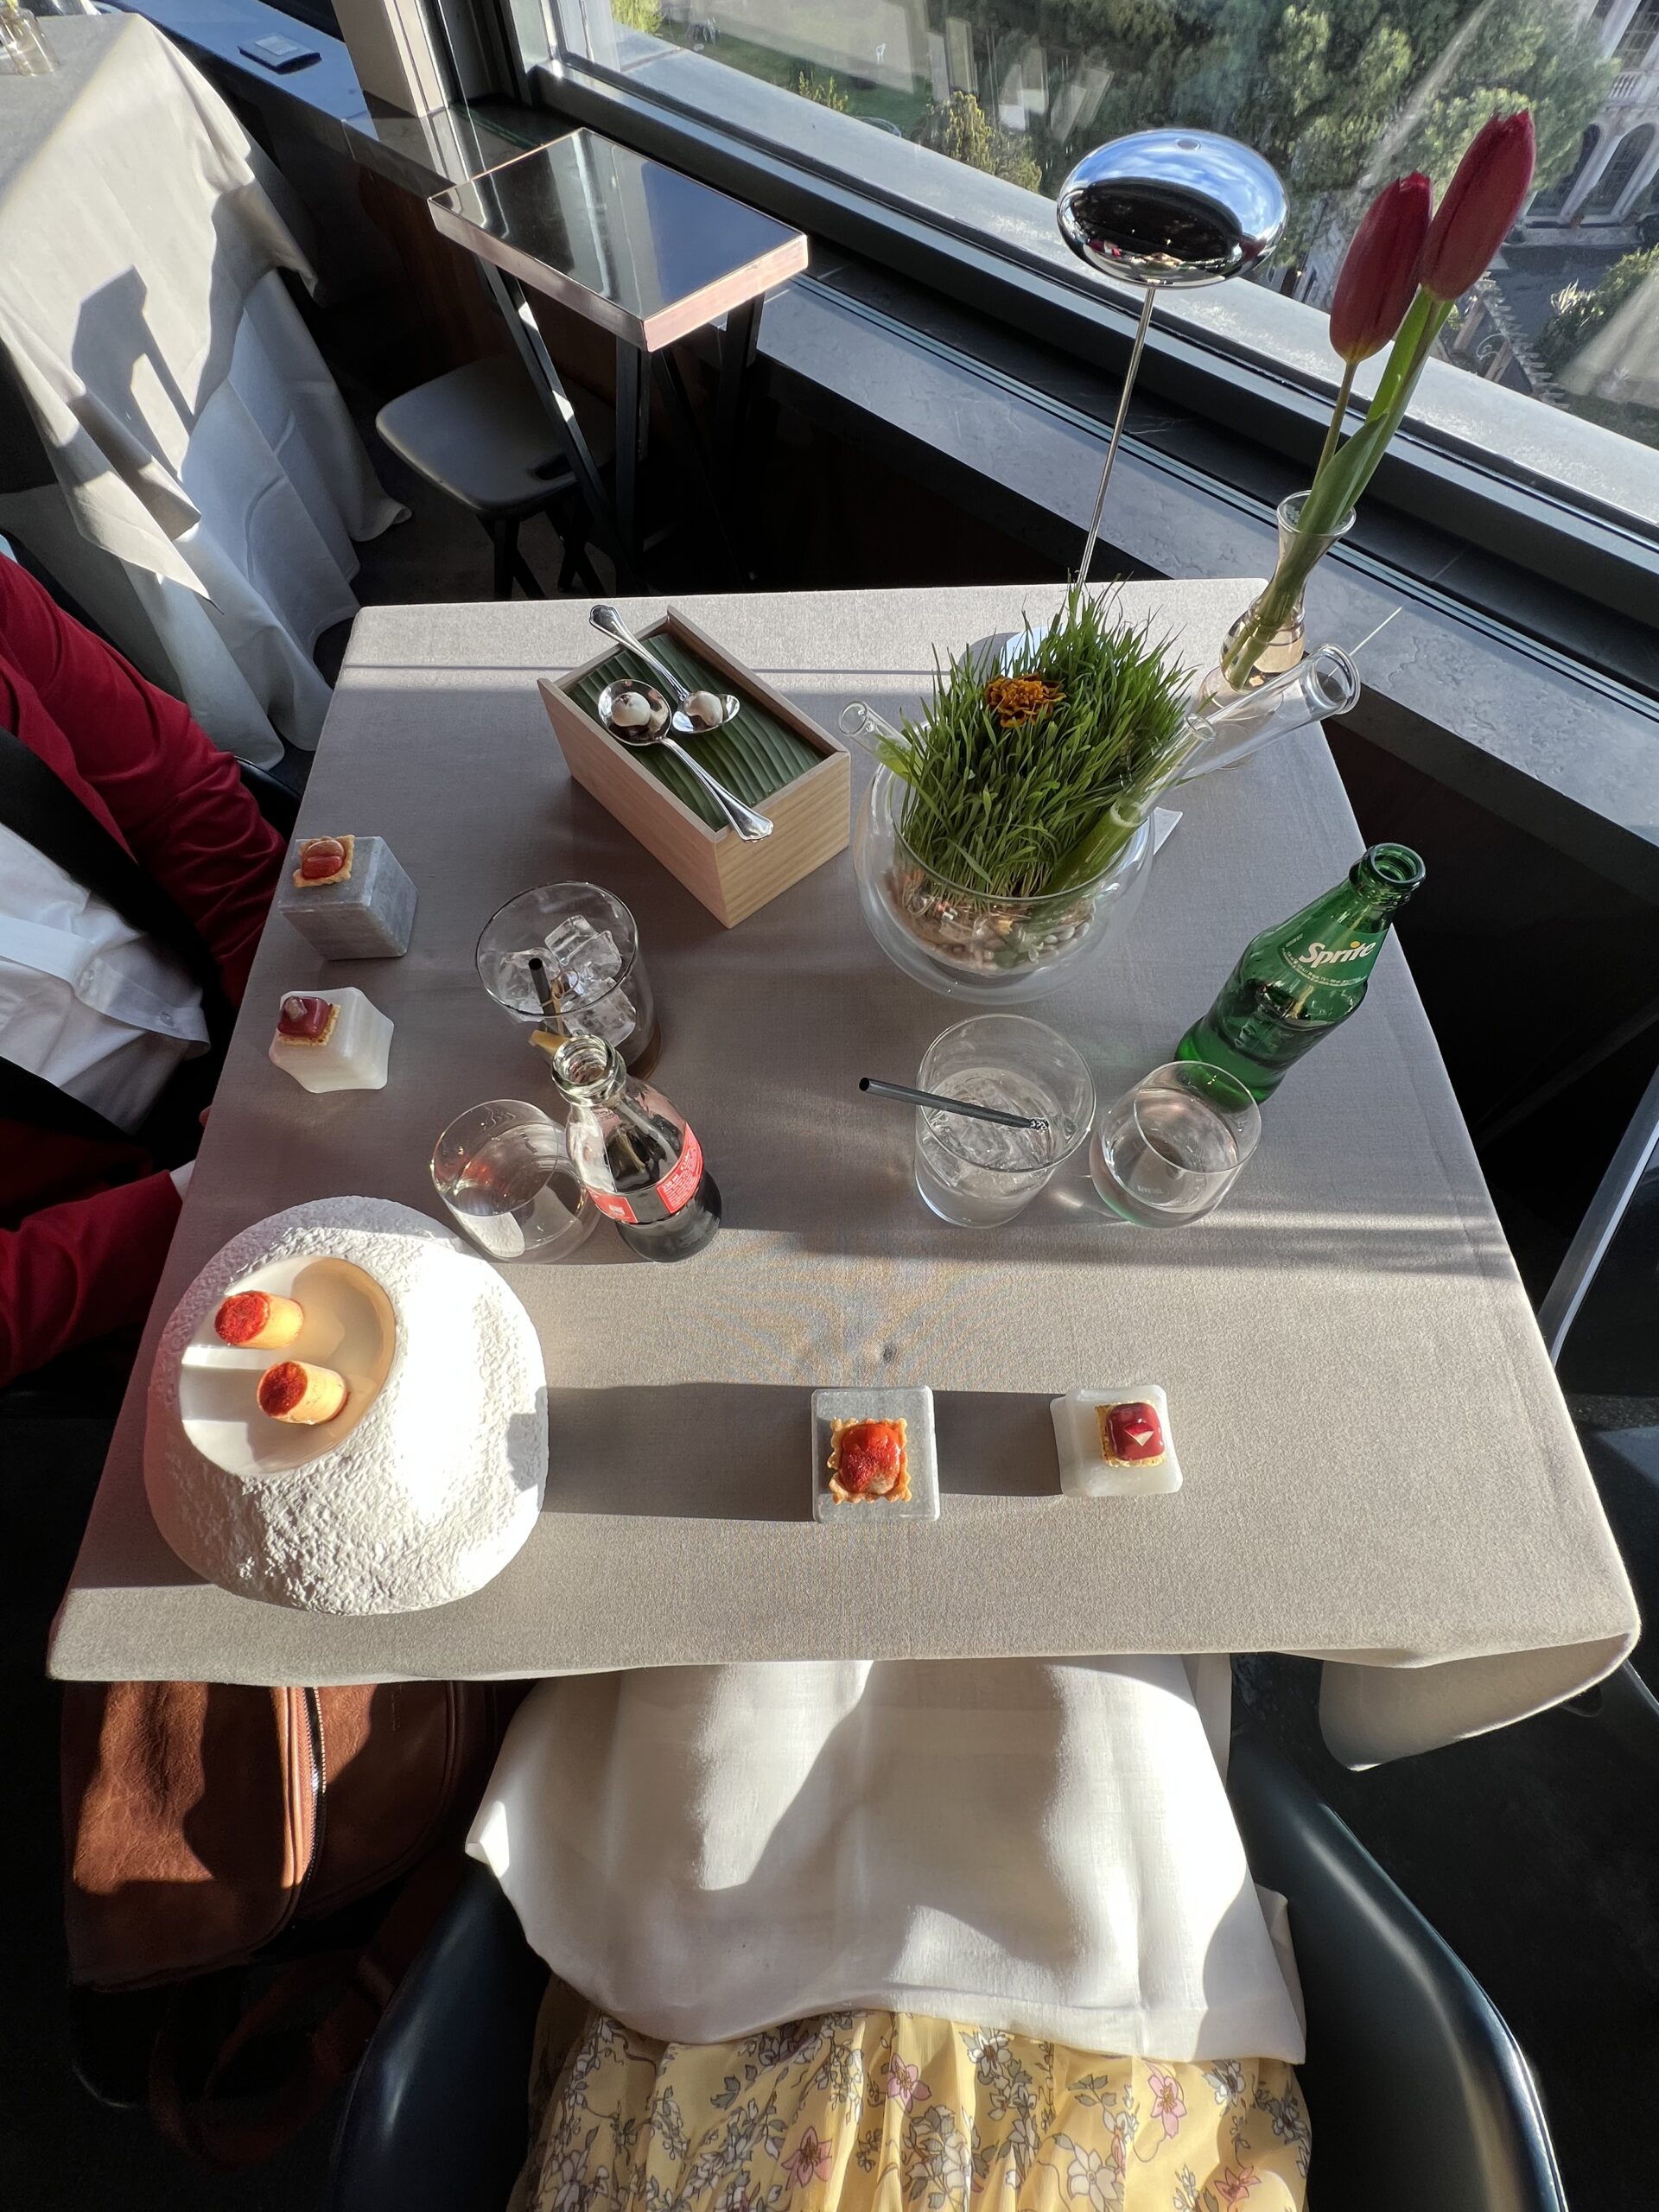 La Terrazza @ Hotel Eden – Michelin Star Restaurant Experience!